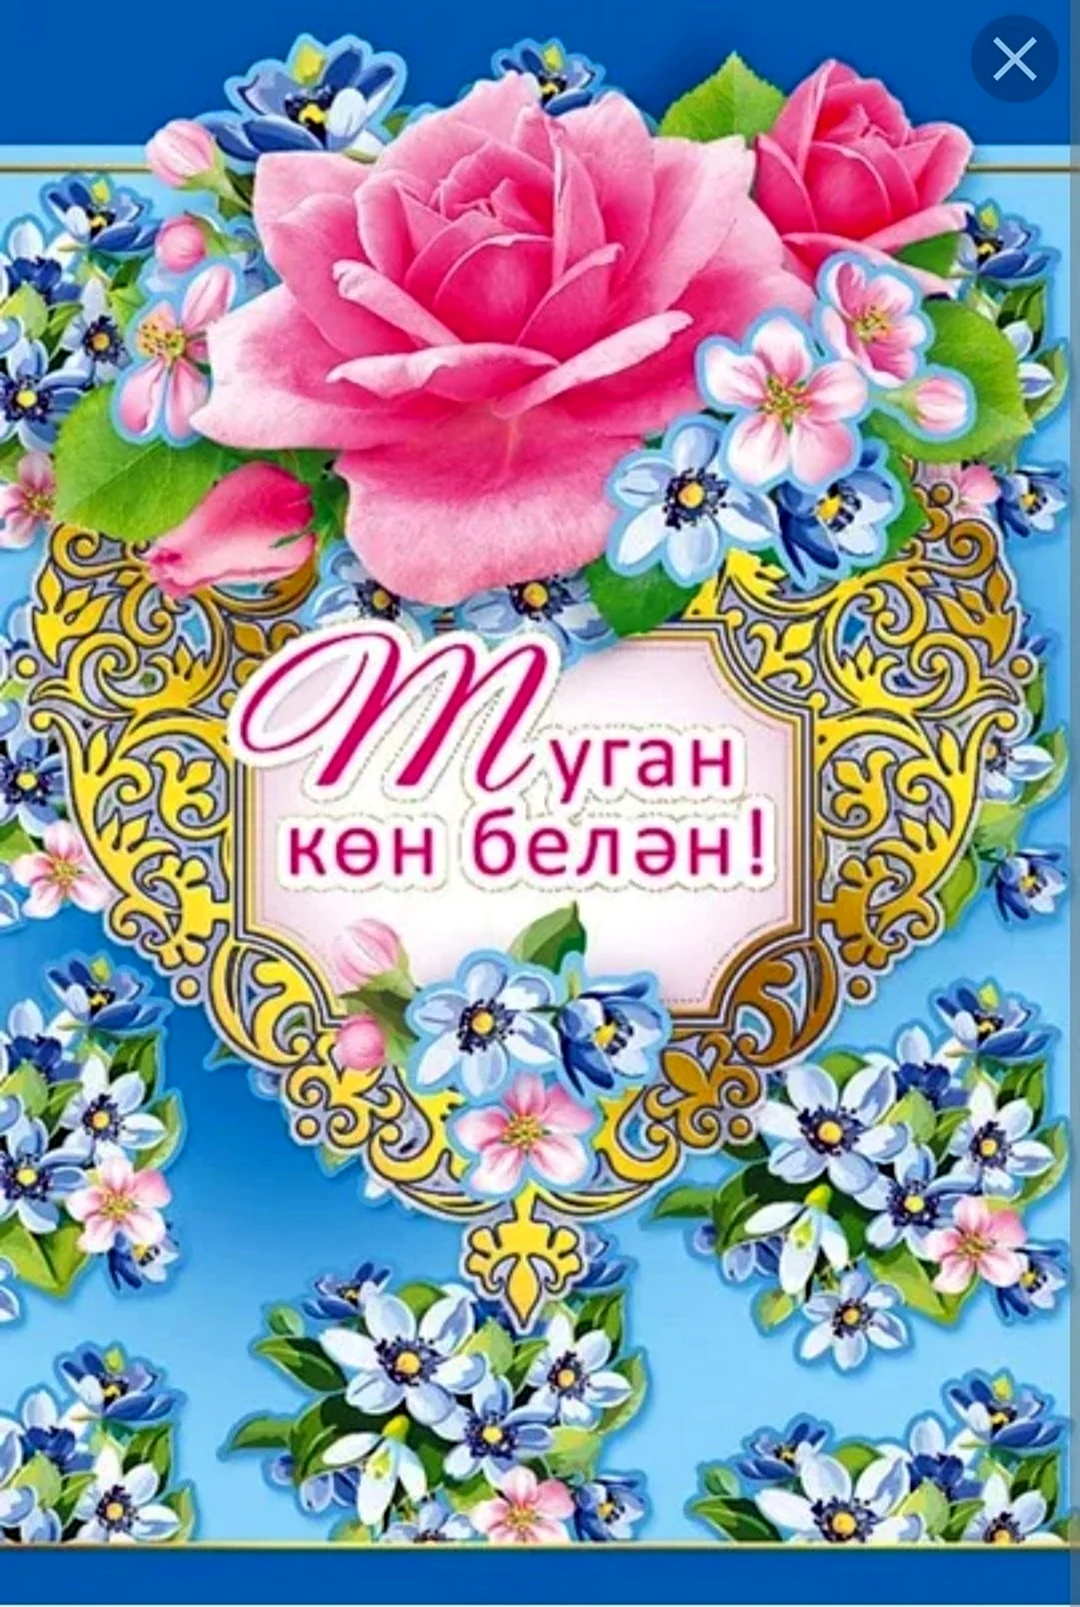 Поздравления с днём рождения на татарском. Открытка для мужчины